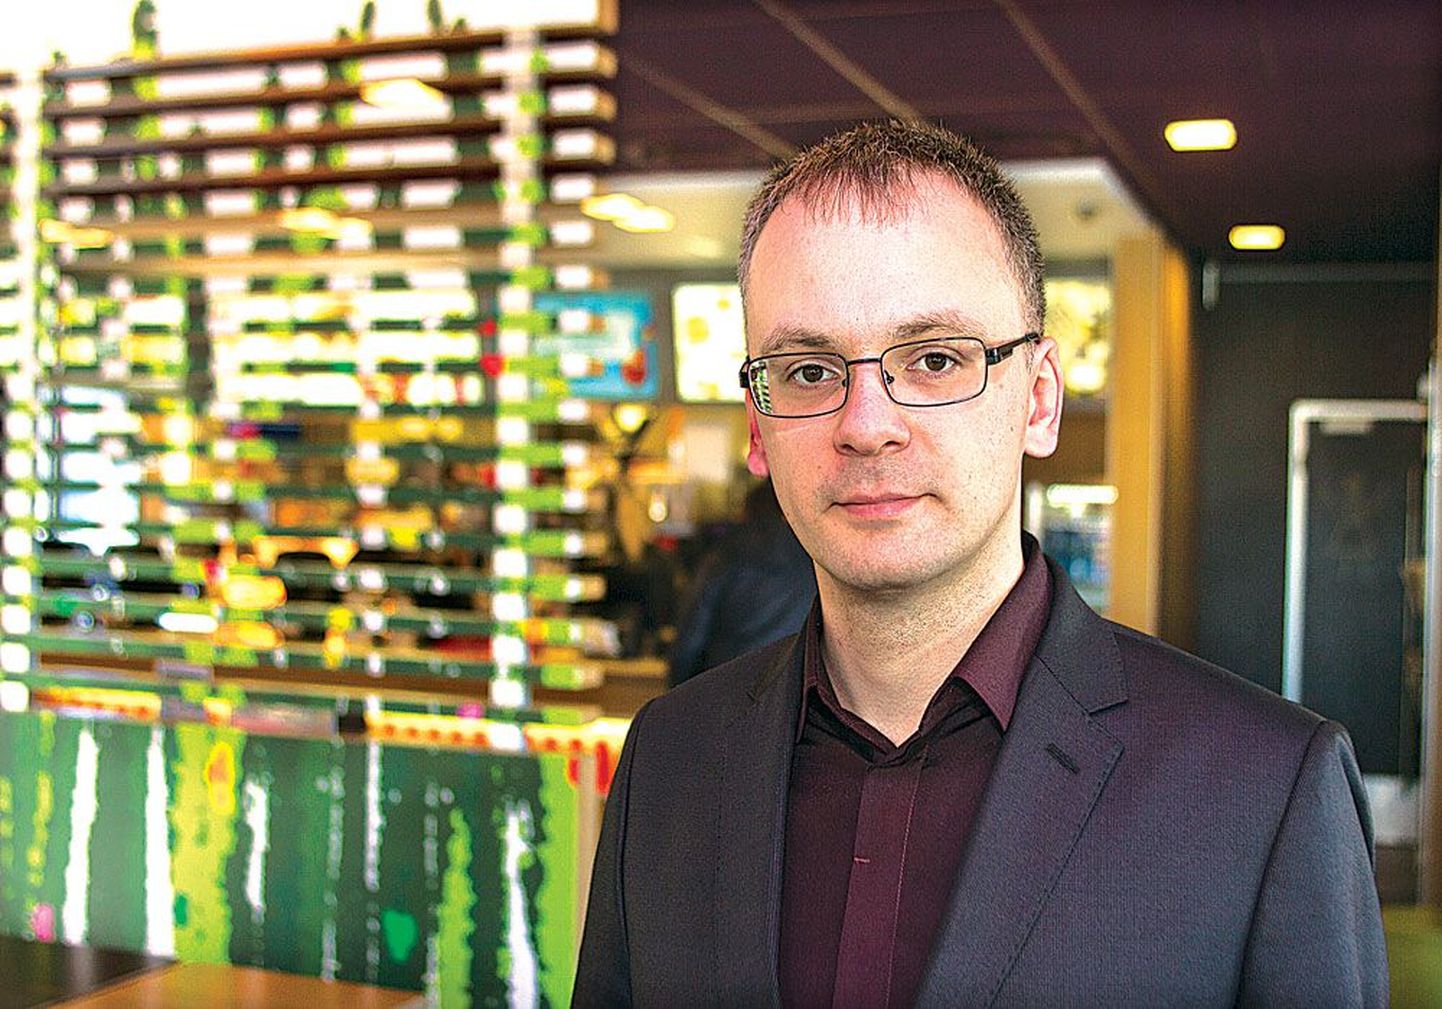 Координатор по персоналу ресторанов McDonald’s в Эстонии Александр Михельсон.